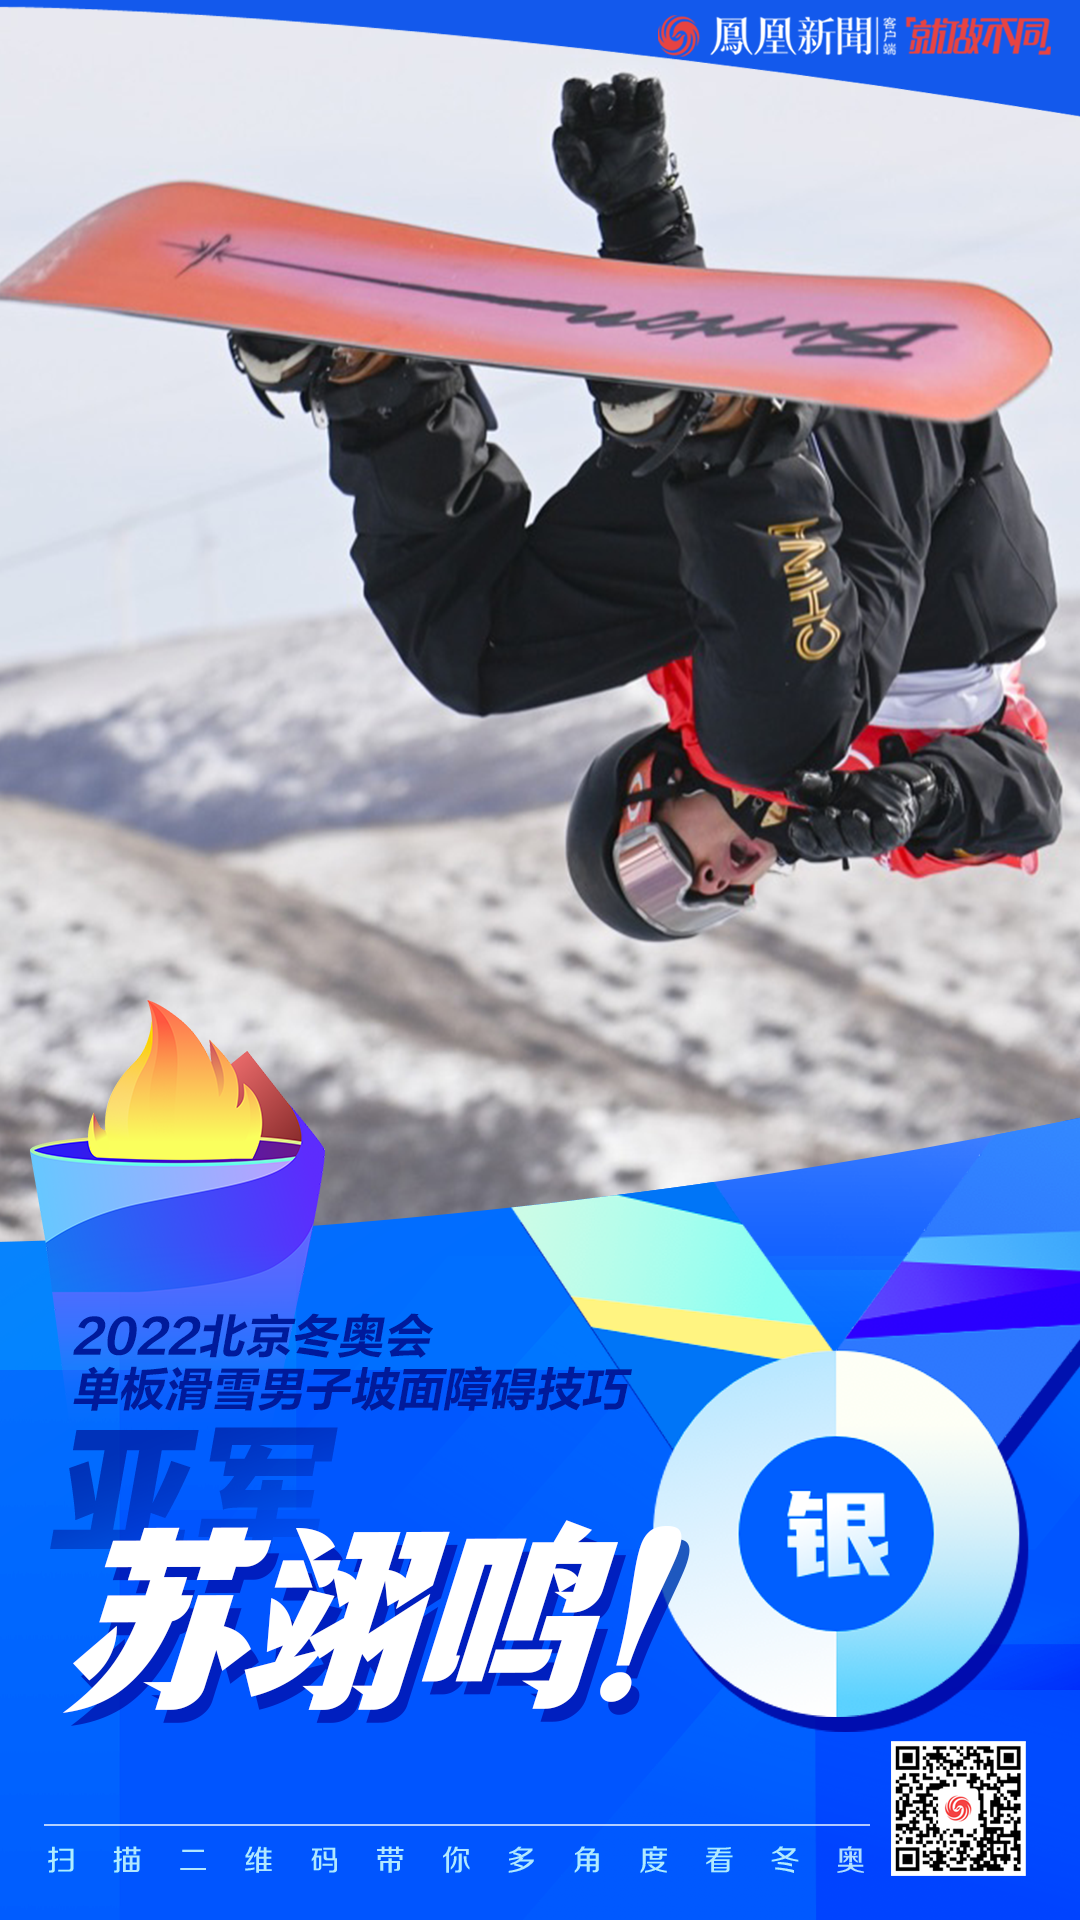 中国第2枚奖牌苏翊鸣单板滑雪摘银创造历史